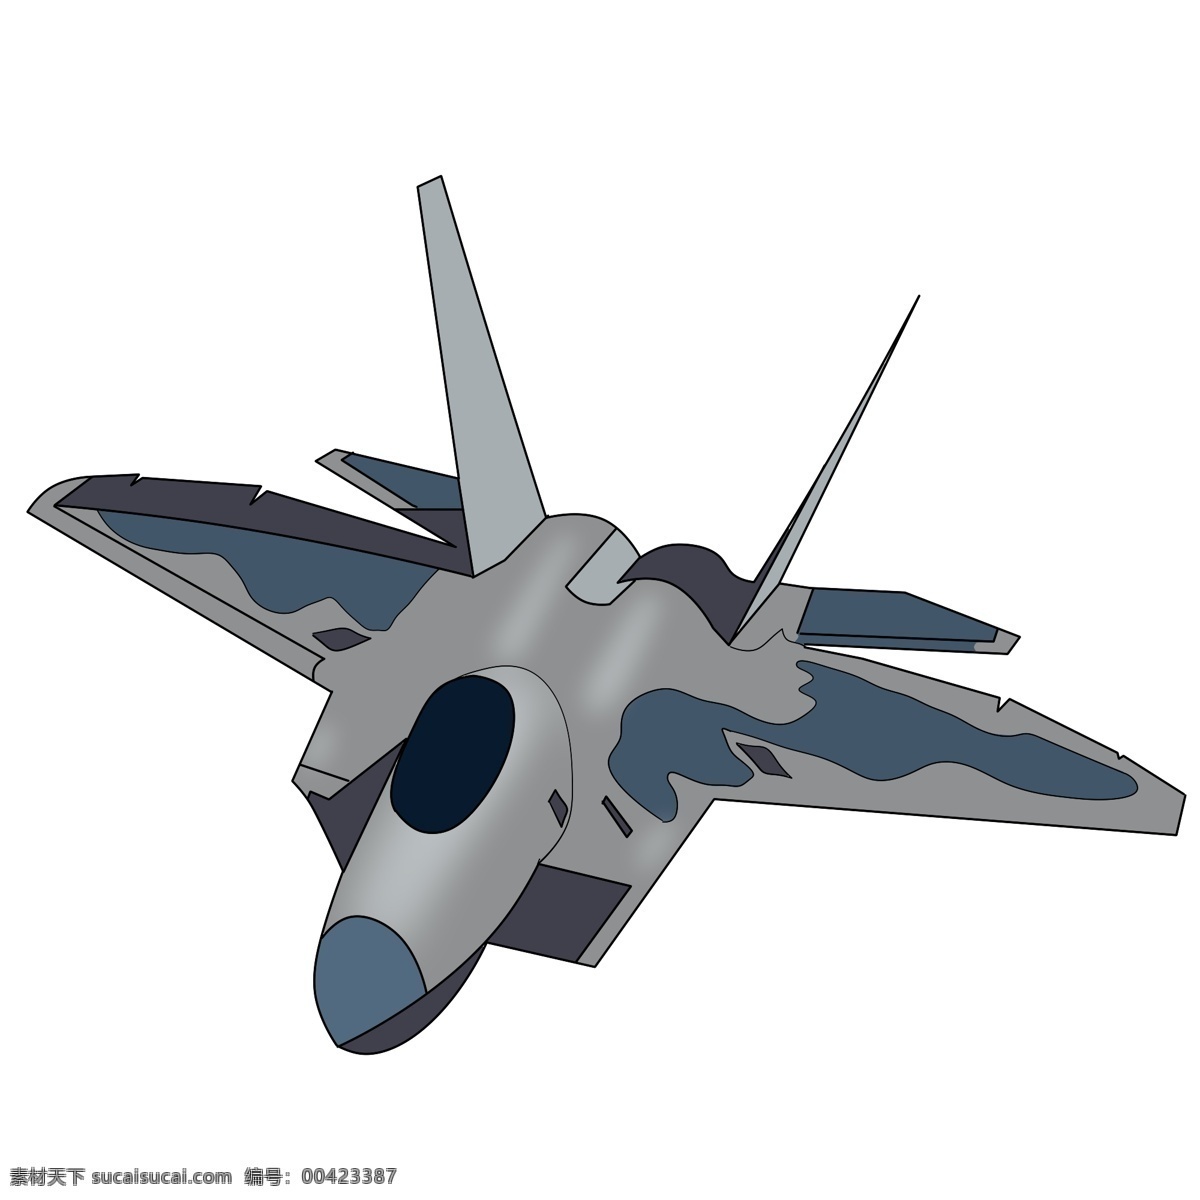 军事 战斗机 飞机 插画 一架战斗机 战斗机插图 插图 灰色